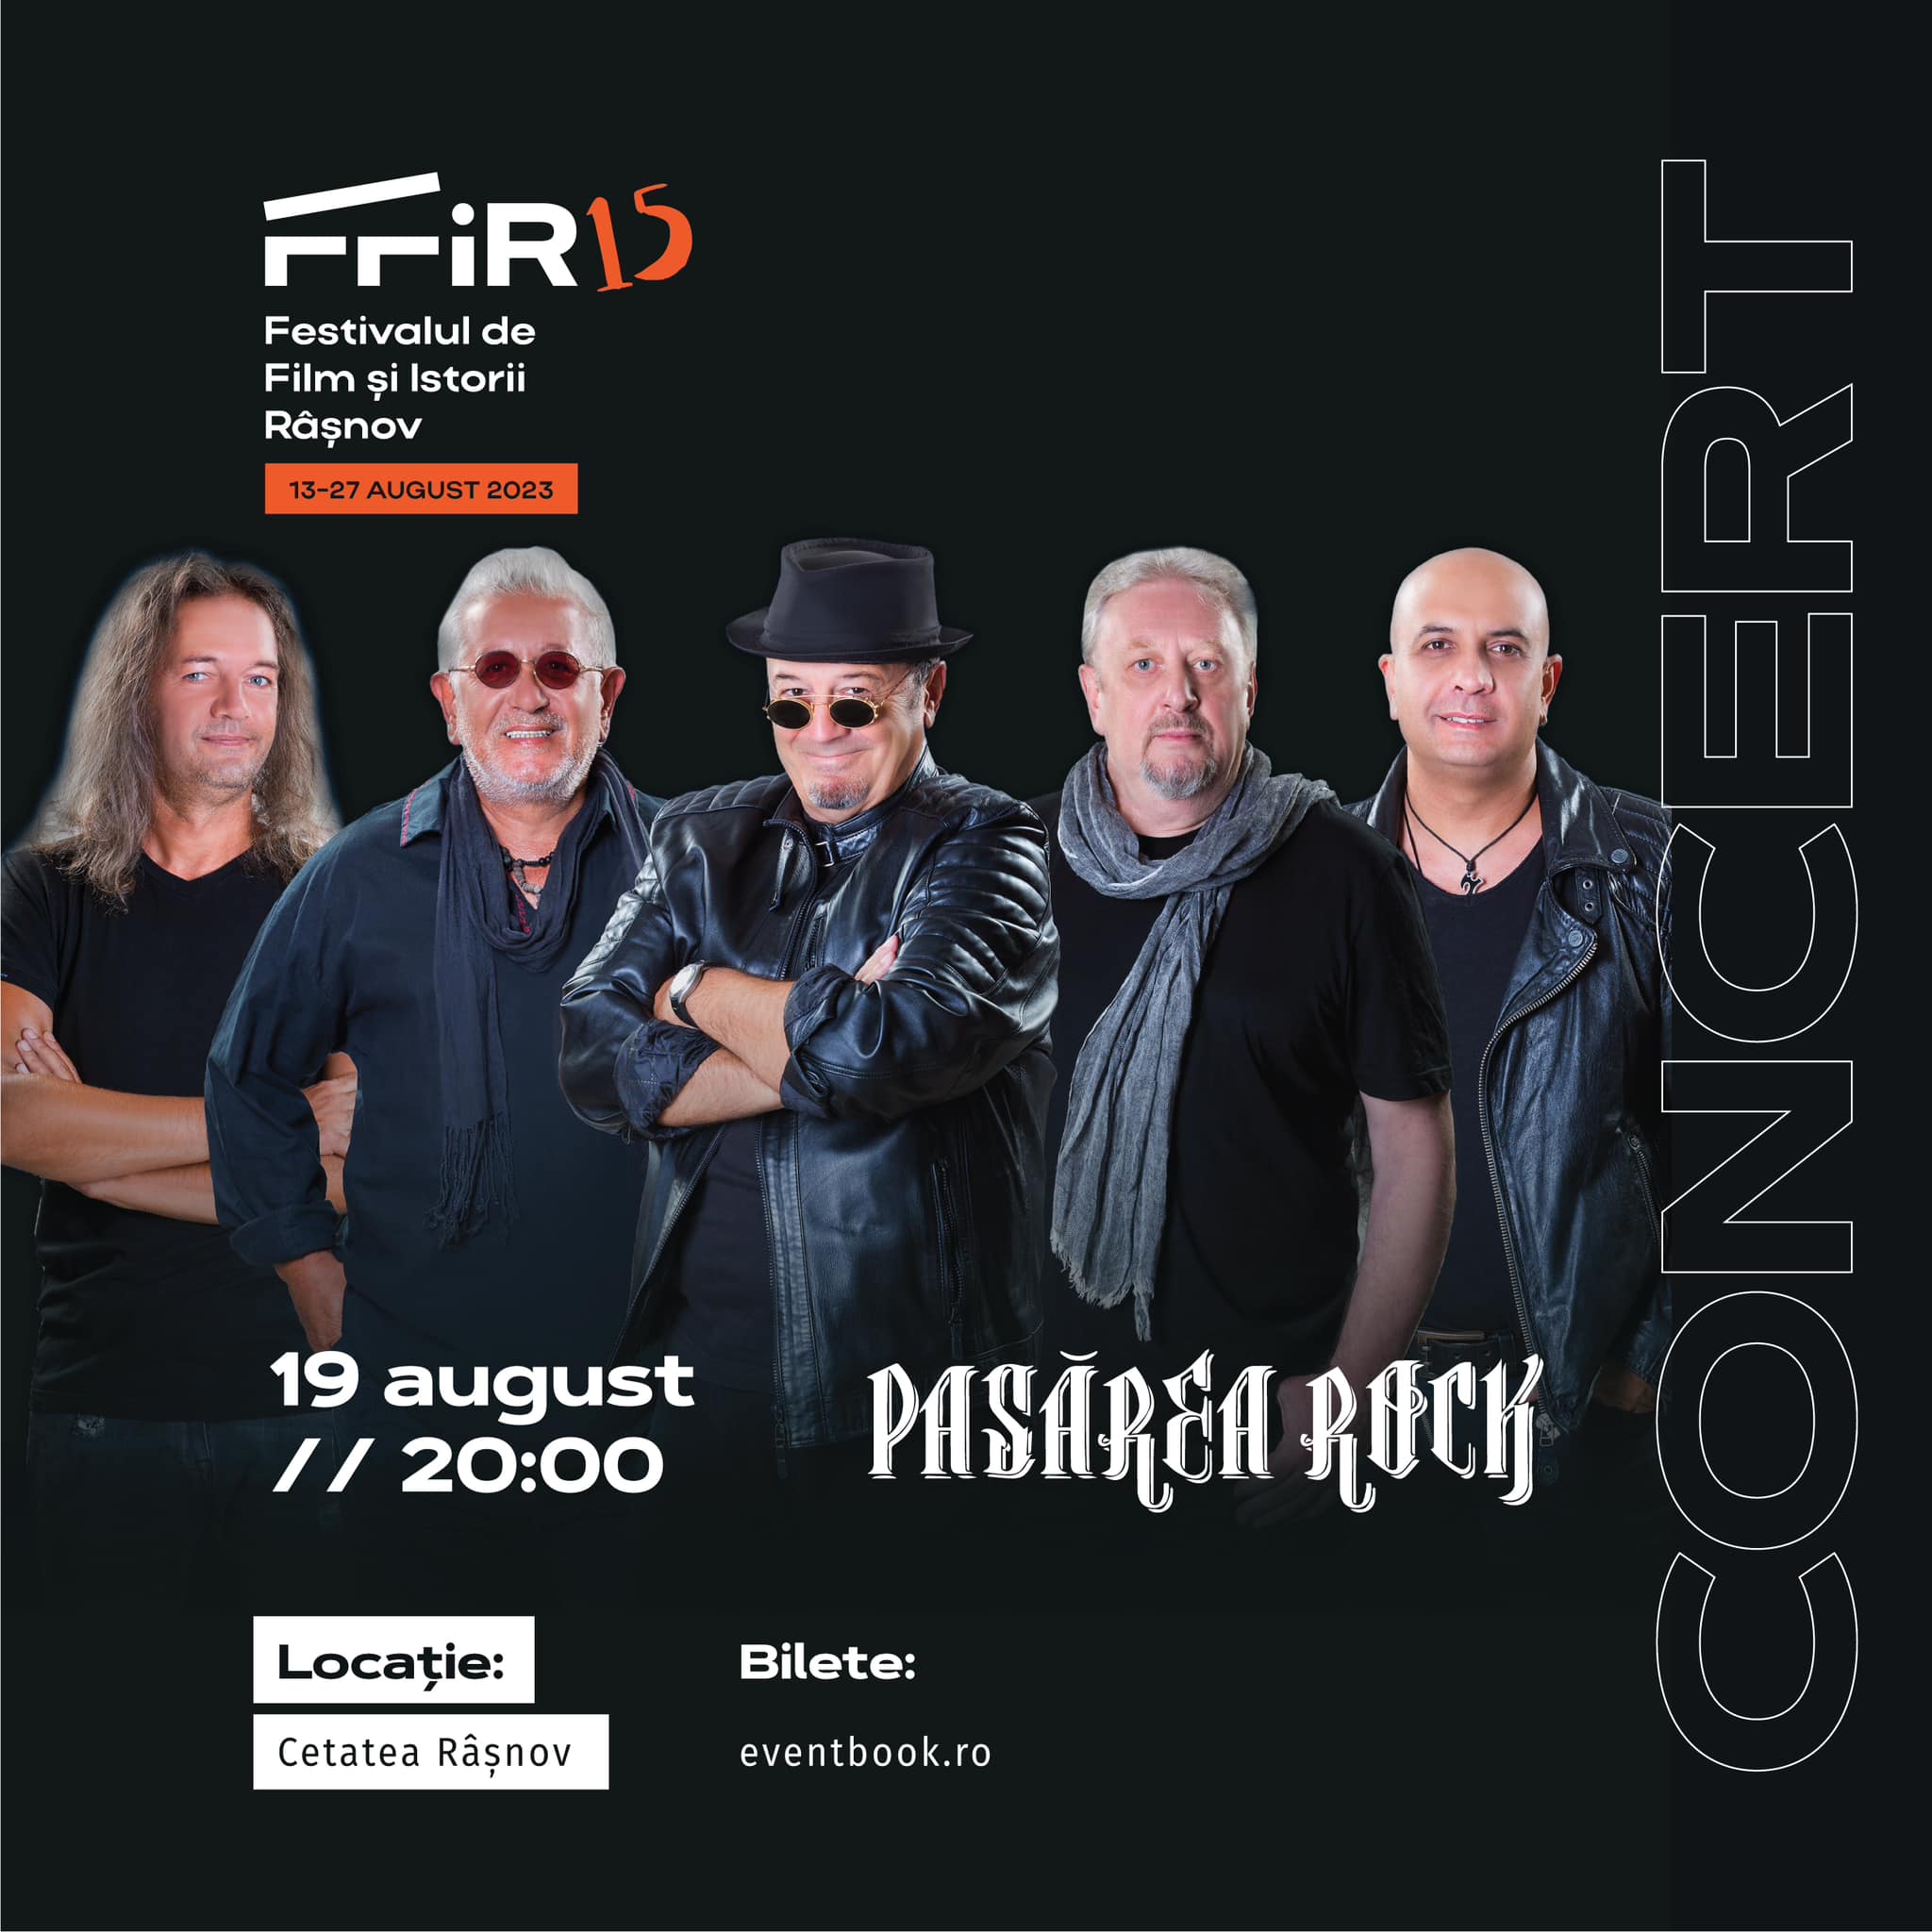 Pe 19 August, Pasărea Rock va deschide seria concertelor din Cetatea Râșnov la Festivalul FFIR15